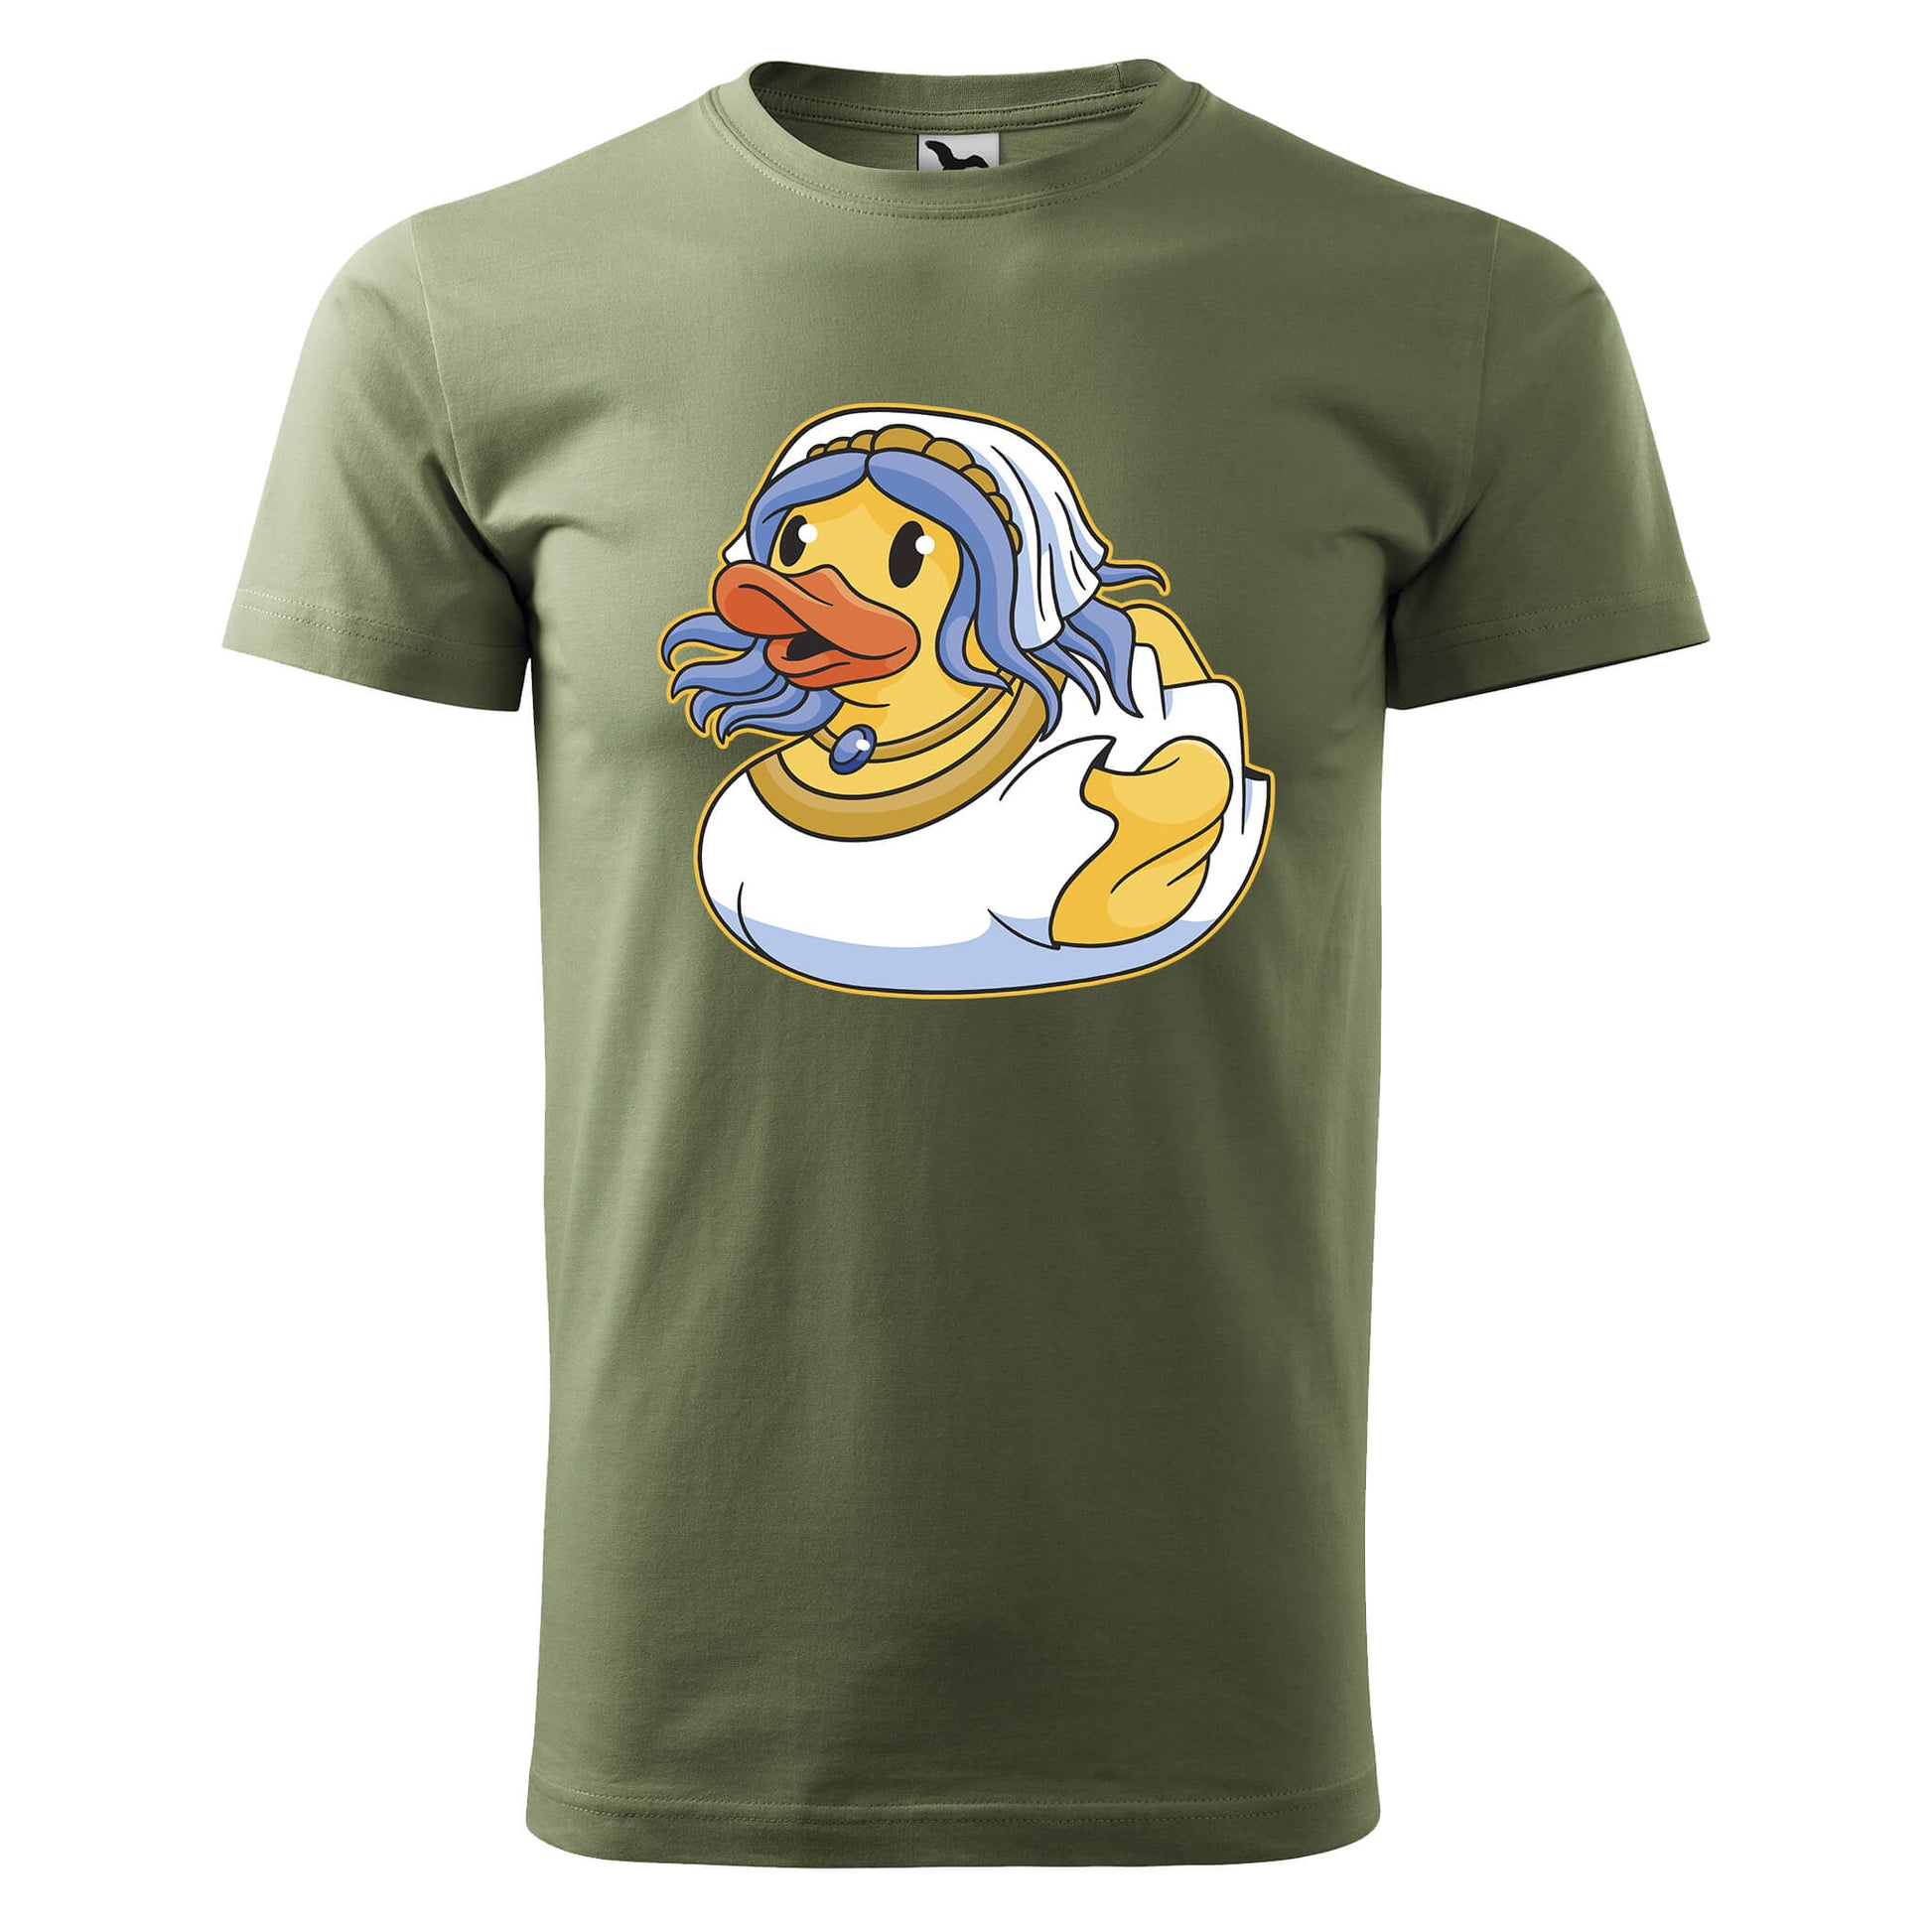 Bride rubber duck t-shirt - rvdesignprint